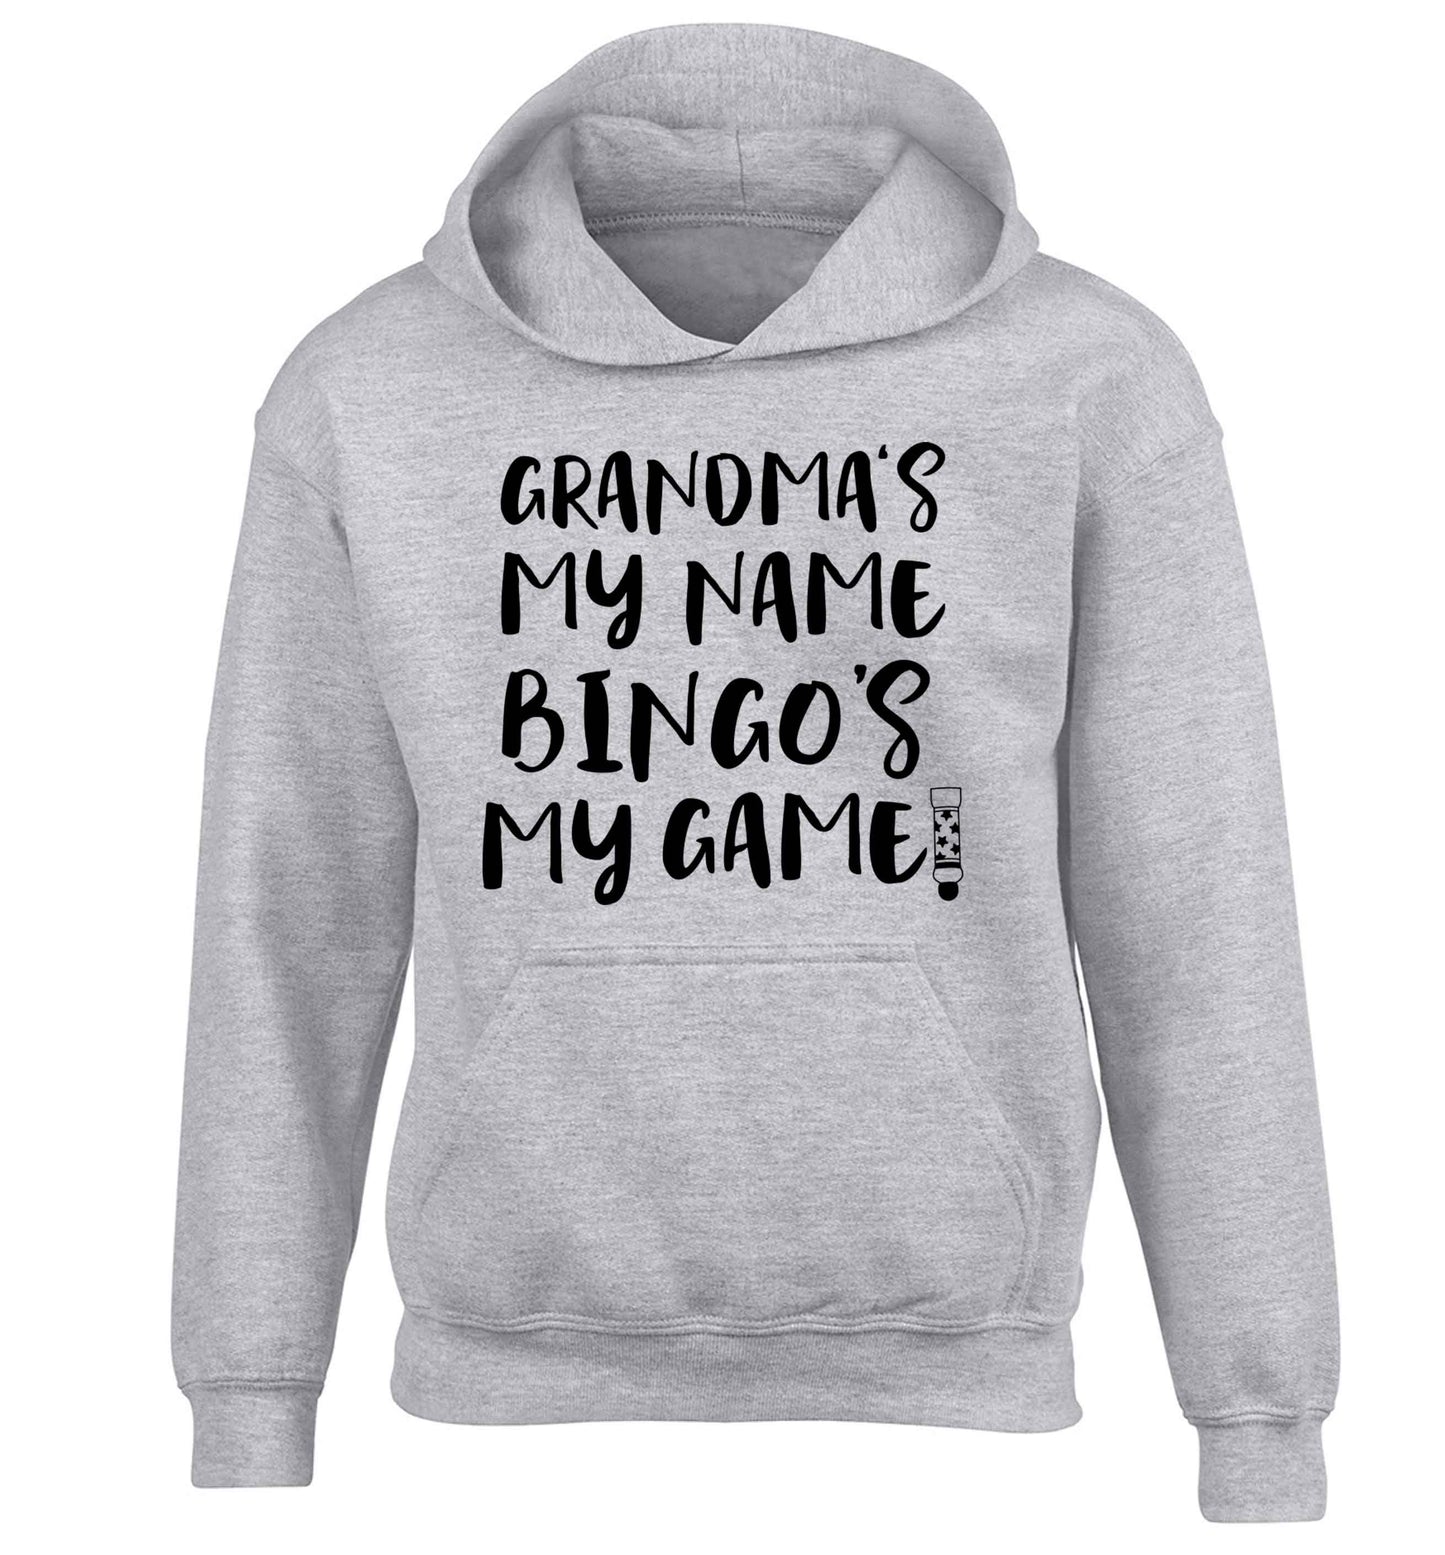 Grandma's my name bingo's my game! children's grey hoodie 12-13 Years